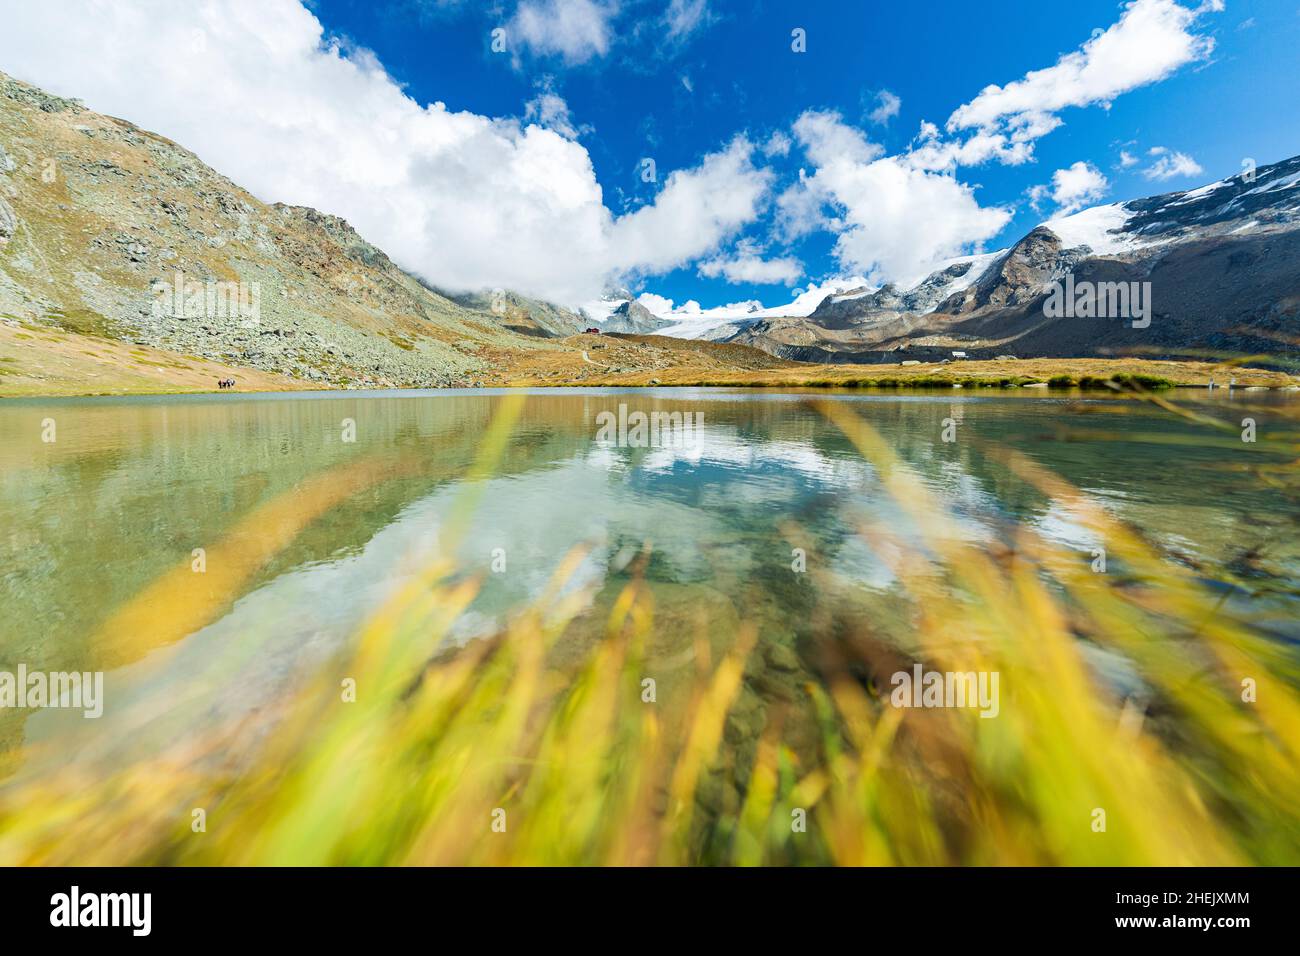 Journée ensoleillée sur le lac immaculé Stellisee en été, Zermatt, canton du Valais, Suisse Banque D'Images